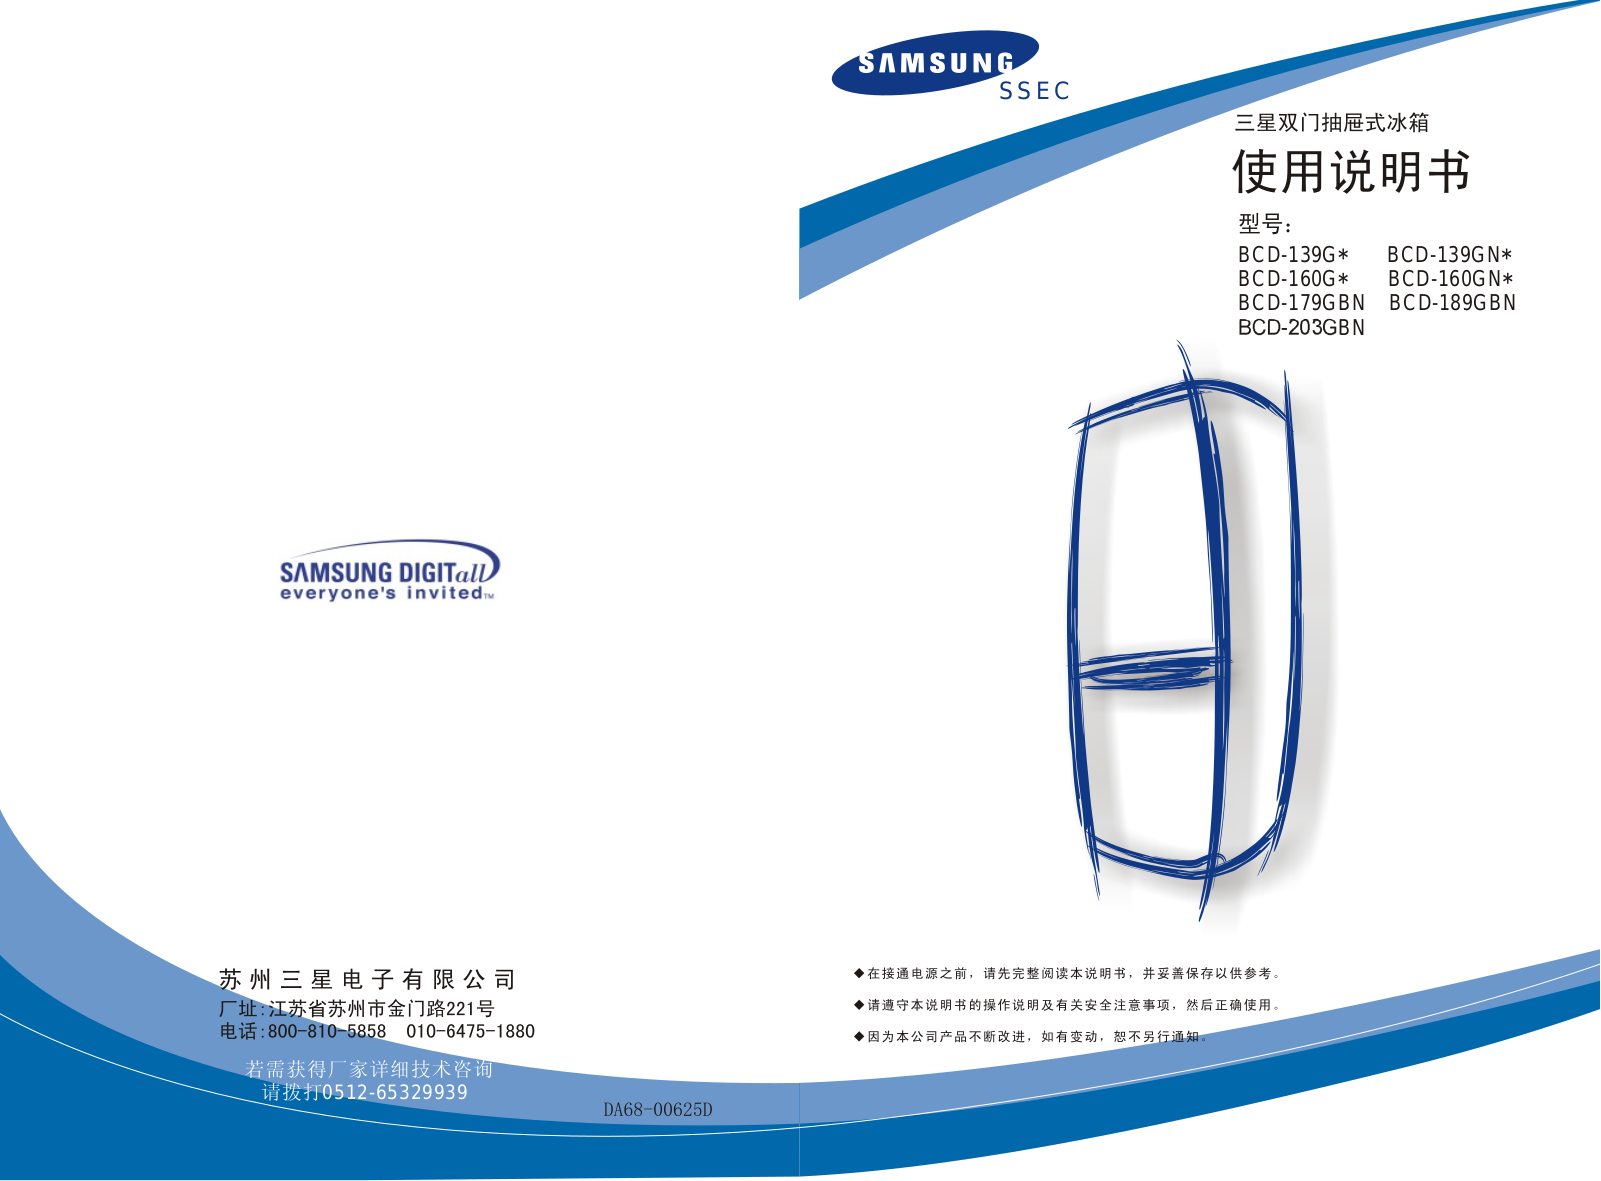 Samsung BCD-160GY, BCD-160GW, BCD-160GN, BCD-139GY, BCD-139GW User Manual